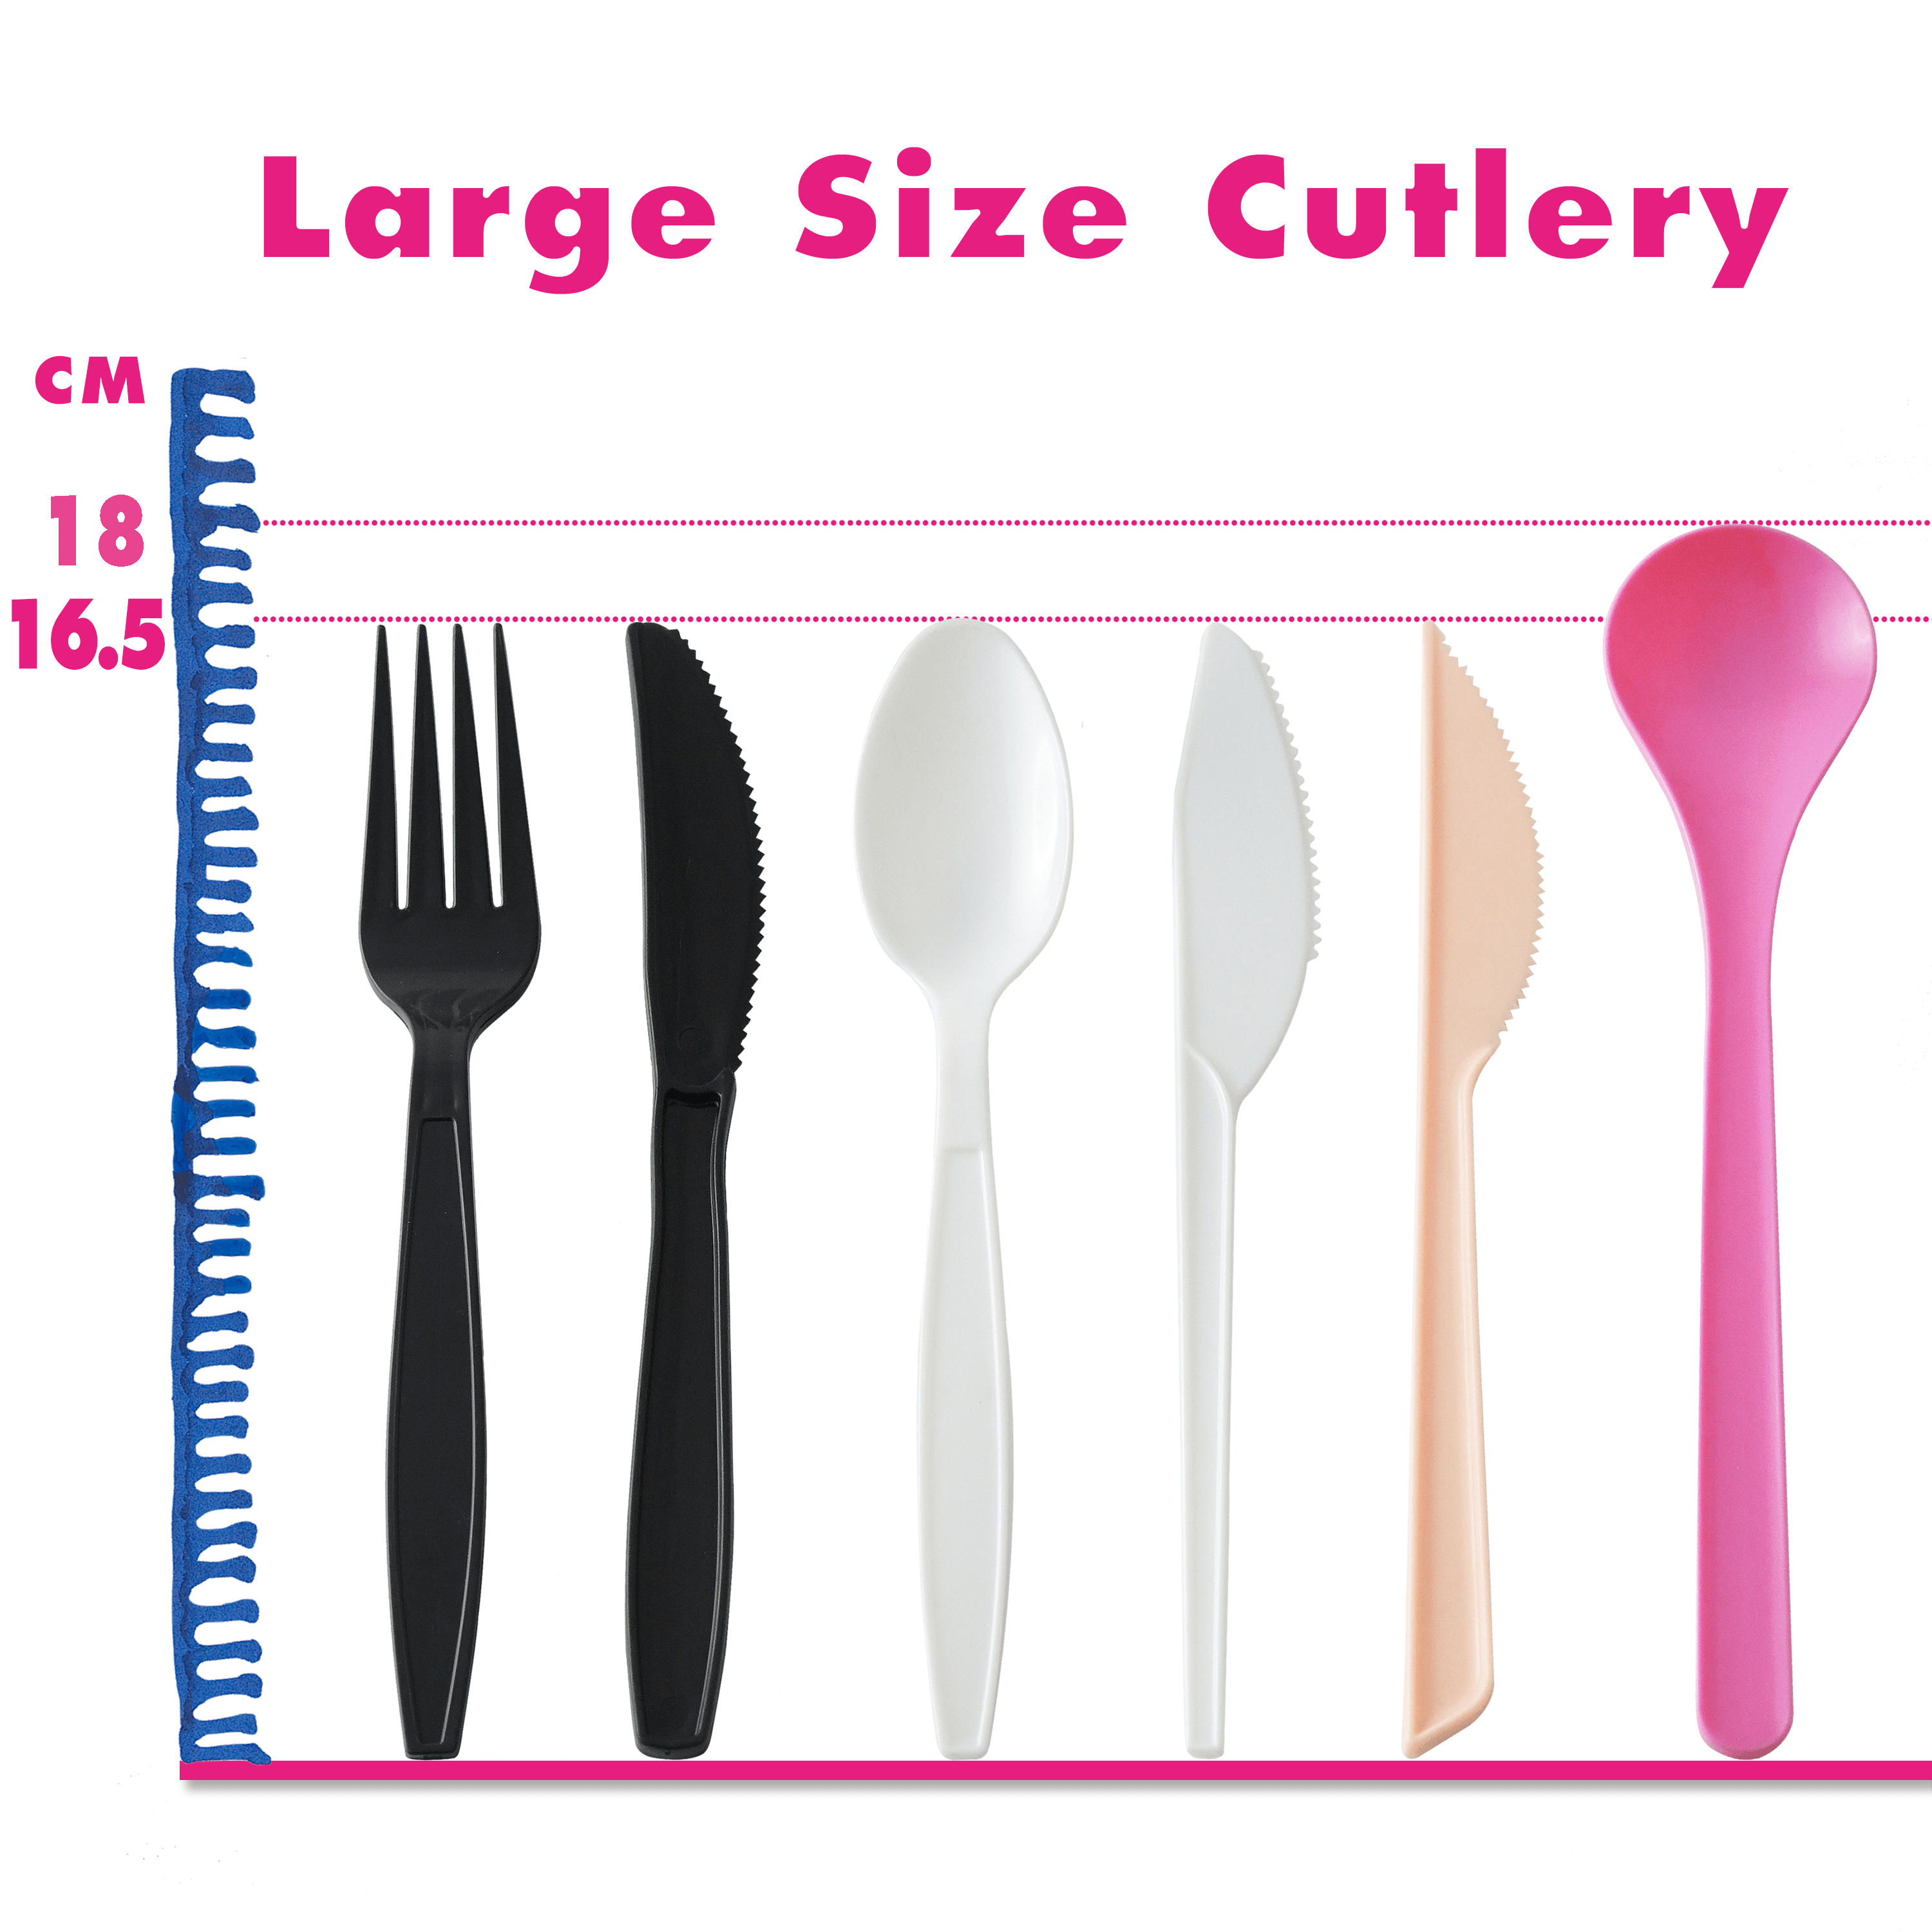 อุปกรณ์ทานอาหารพลาสติกขนาดใหญ่ 16.5-18 ซม.